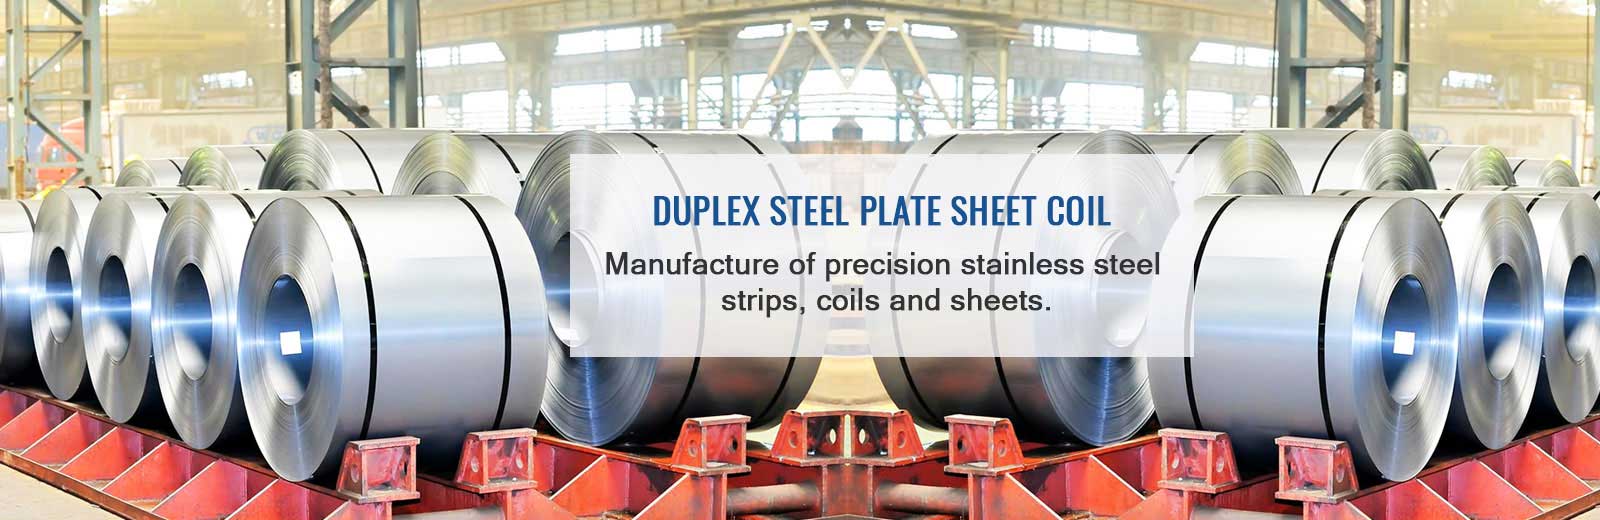 Duplex Steel Plate Sheet coil